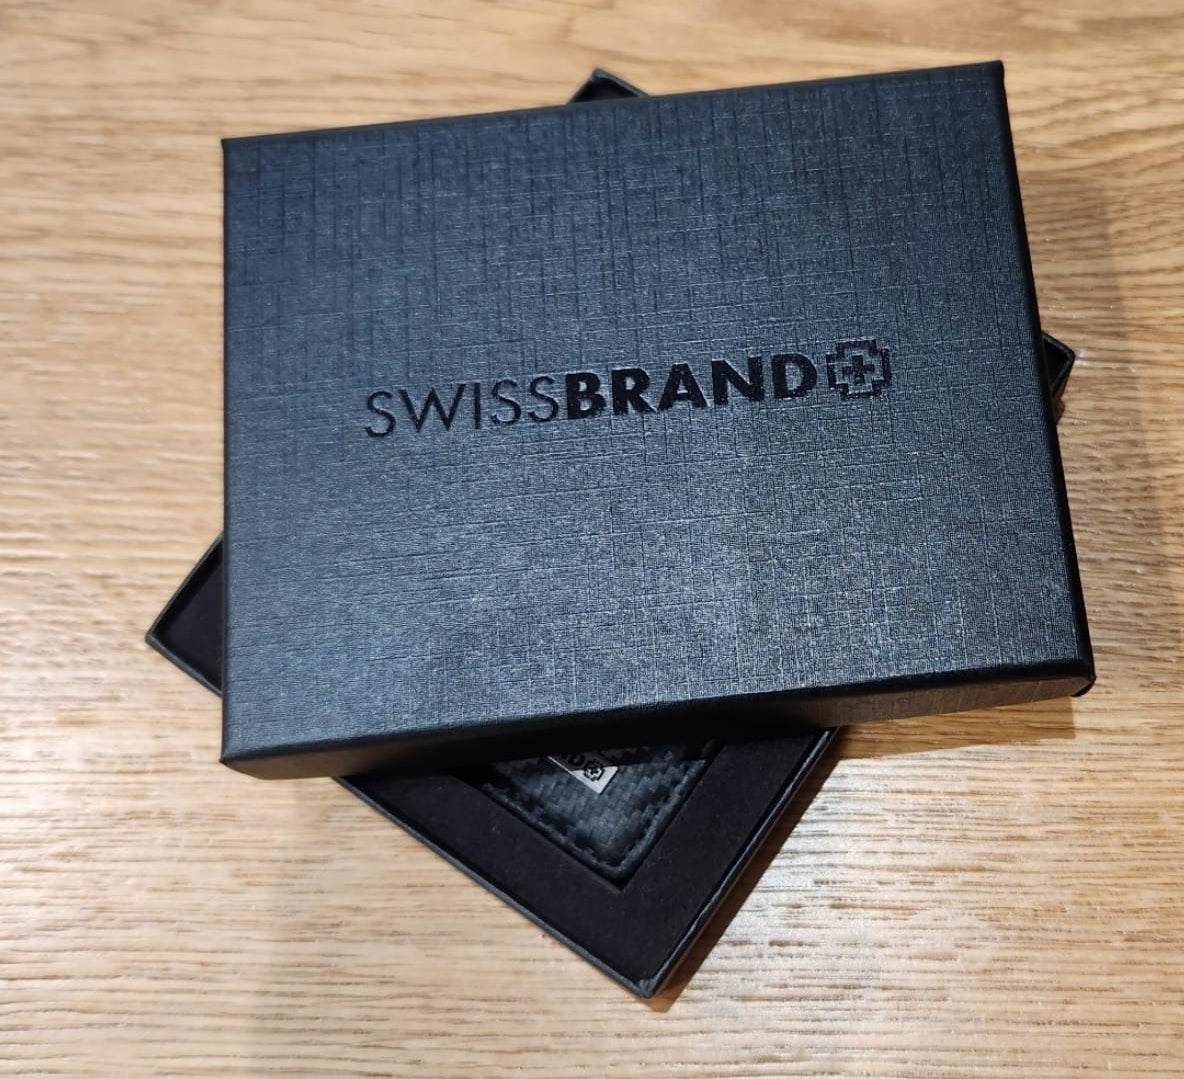 ✮מותג שוויצרי מקורי✮ ארנק עור אלגנטי מבית המותג SwissBrand דגם Monaco Trifold